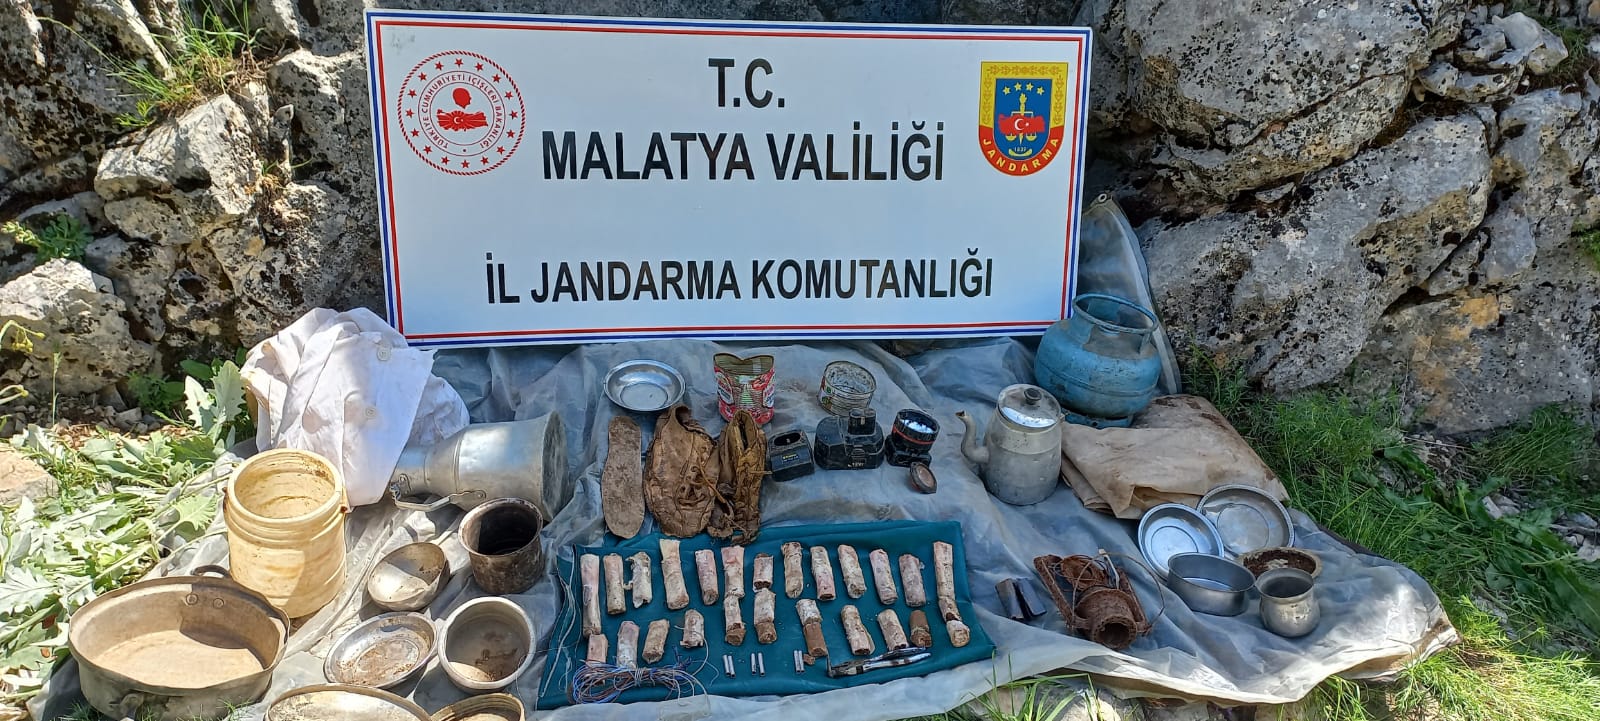 Malatya’da geçmiş yıllarda PKK/KCK terör örgütü mensuplarınca kullanıldığı belirlenen bir mağaraya düzenlenen operasyonda 5 kilogram A-4 patlayıcı ile  birlikte giyim ve yaşam malzemeleri ele geçirildi.